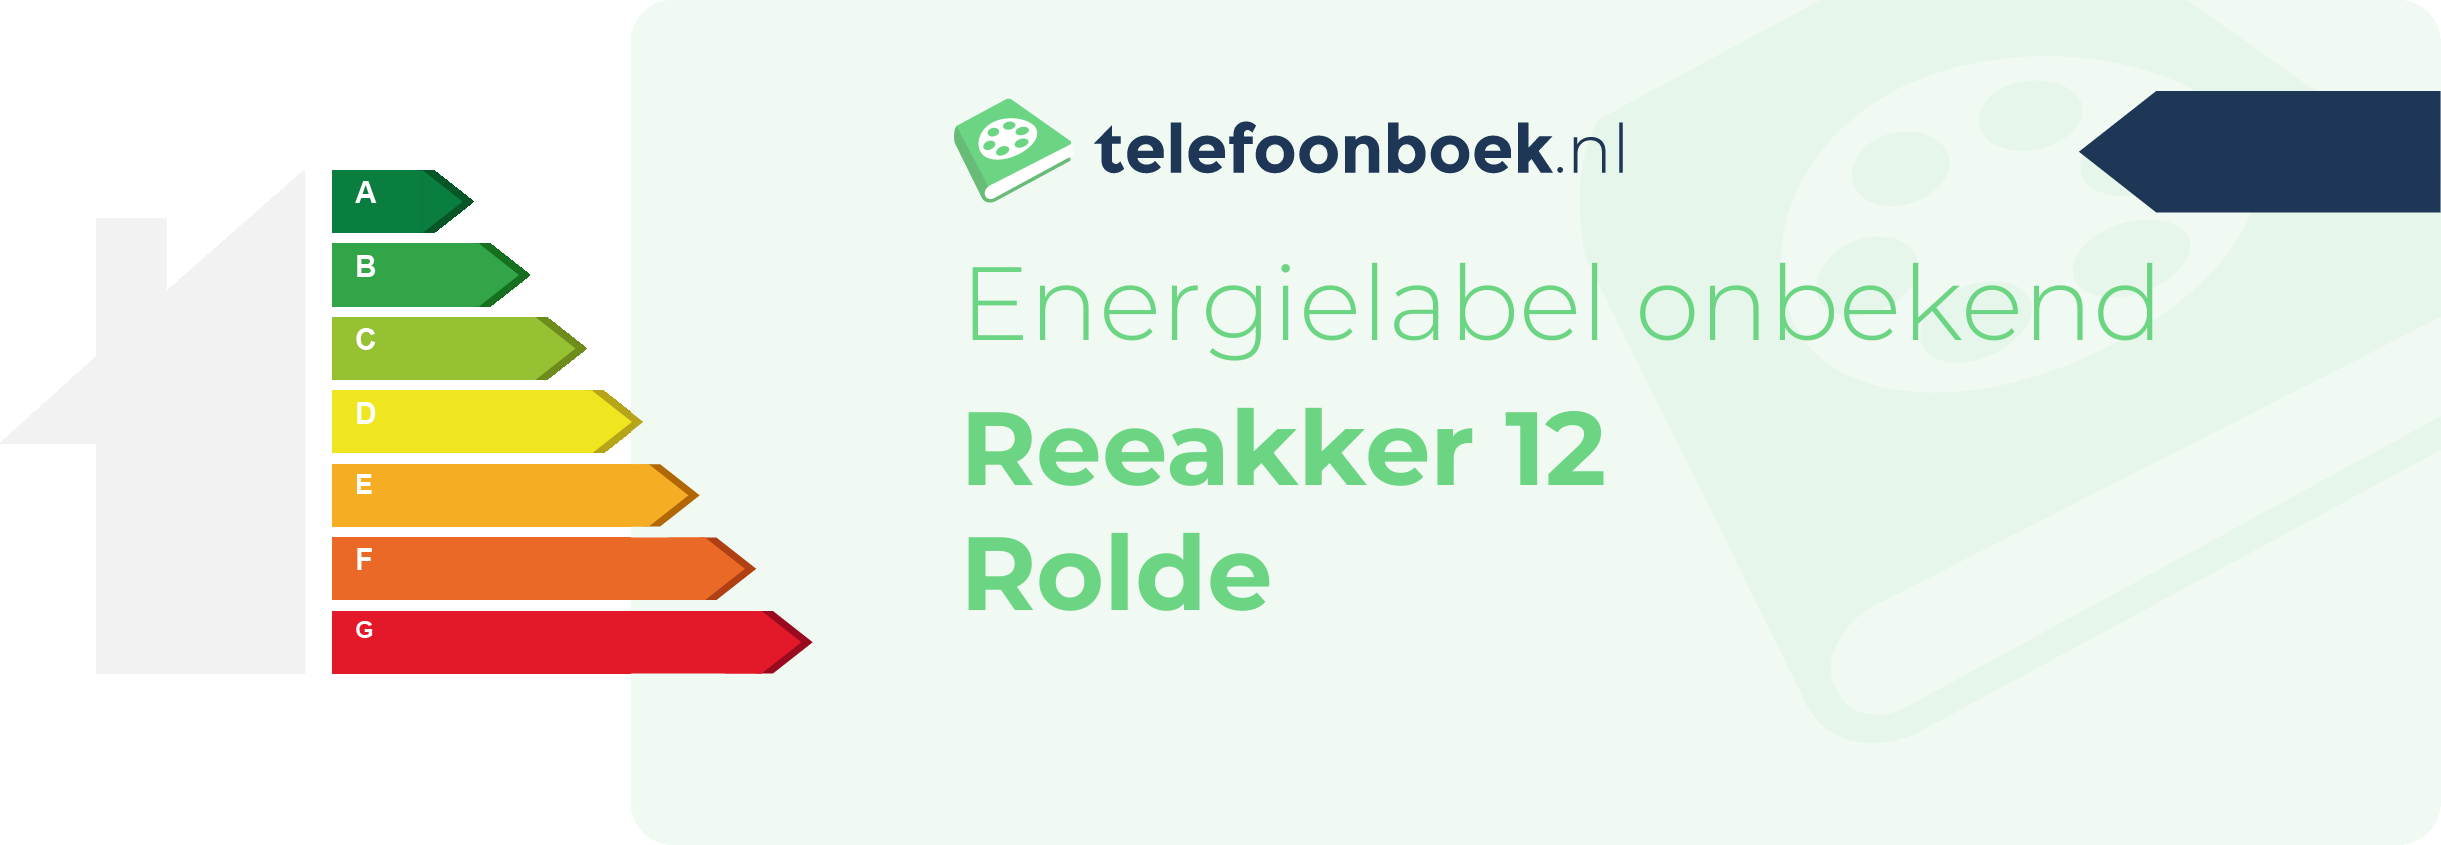 Energielabel Reeakker 12 Rolde